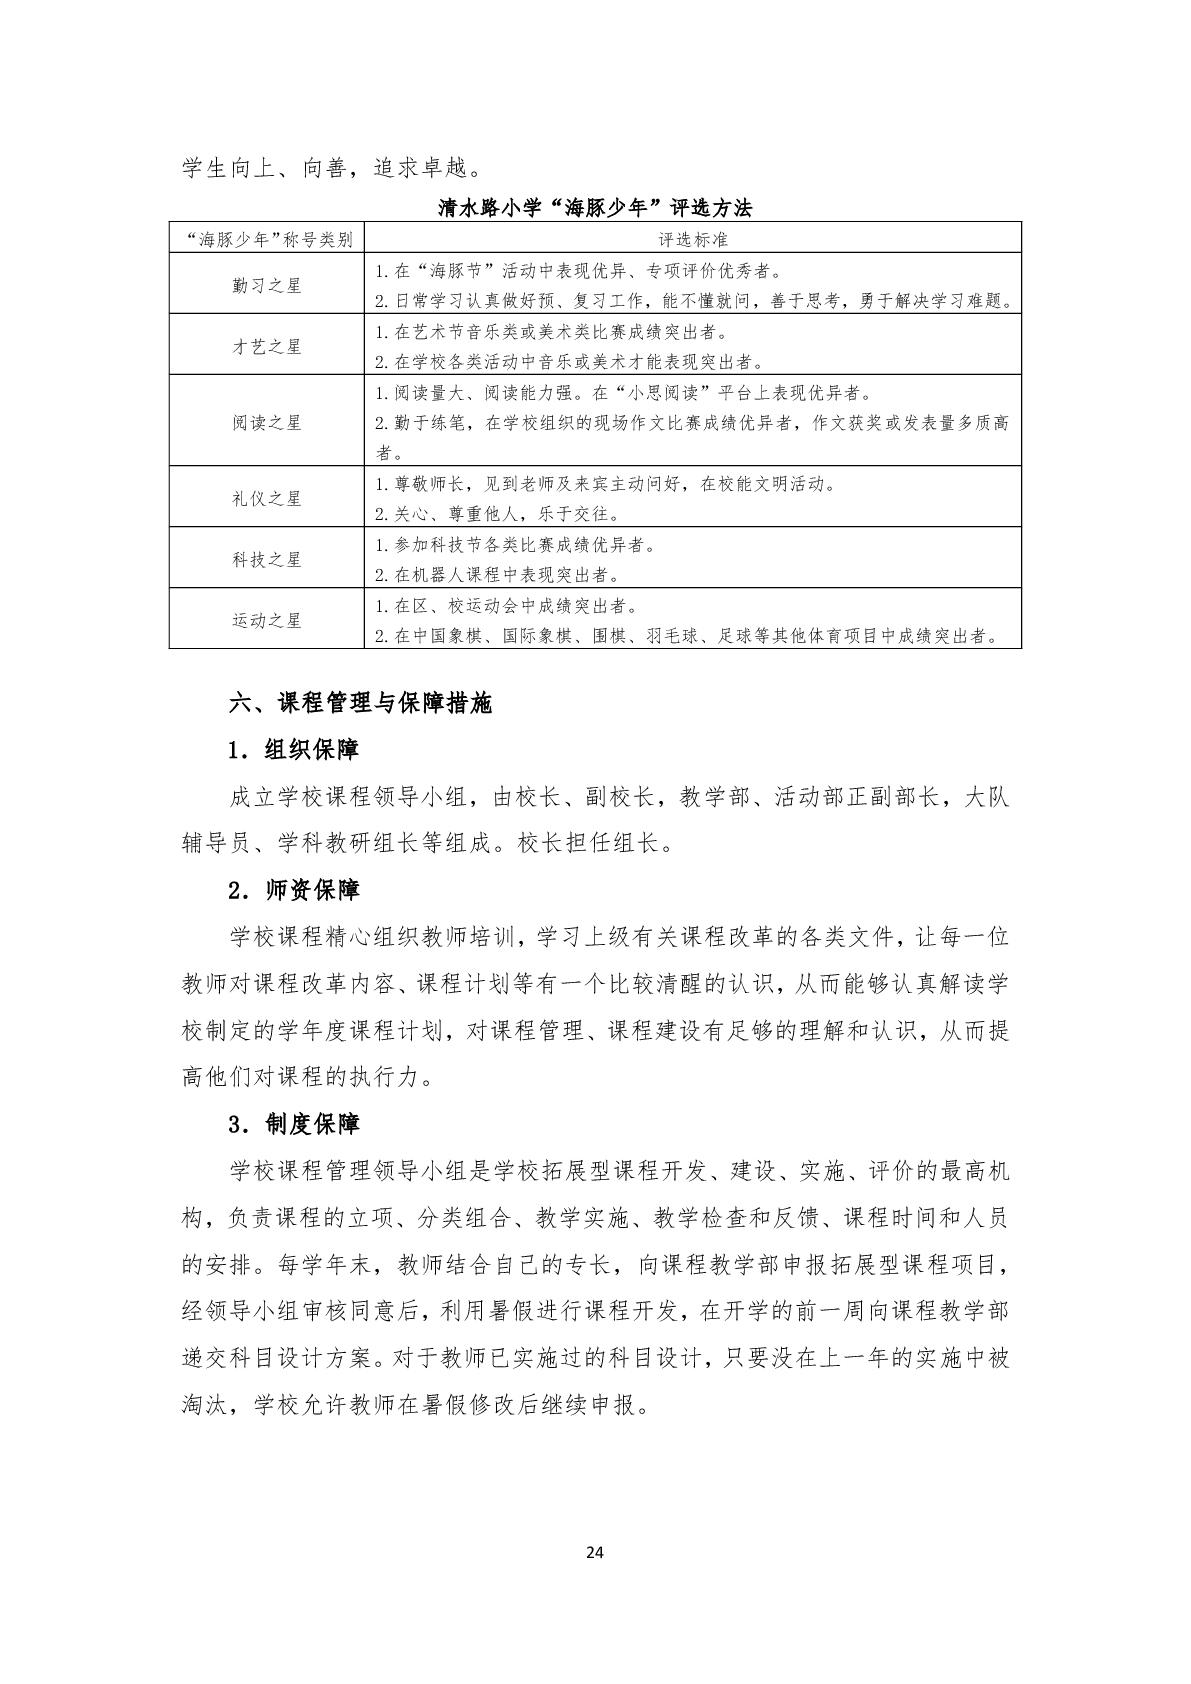 2.上海市嘉定区清水路小学2020学年度课程计划-024.jpg